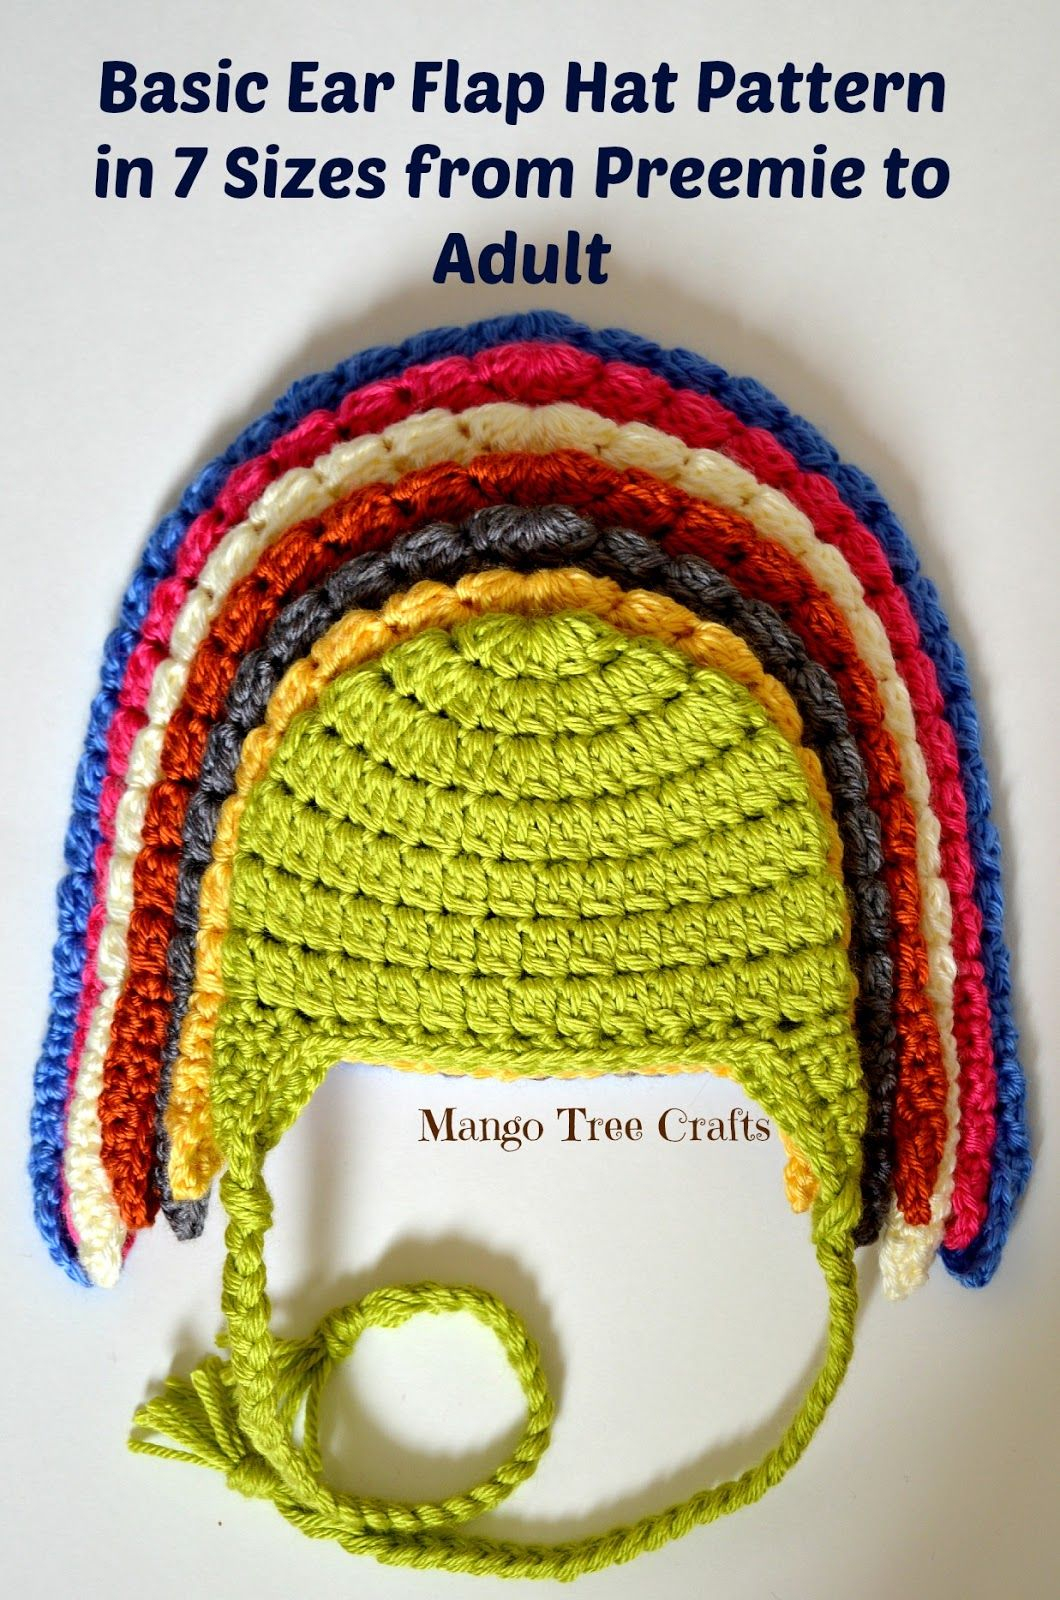 Crochet Hat With Ears Pattern Basic Crochet Ear Flap Hat Pattern In 7 Sizes Crochet Hats